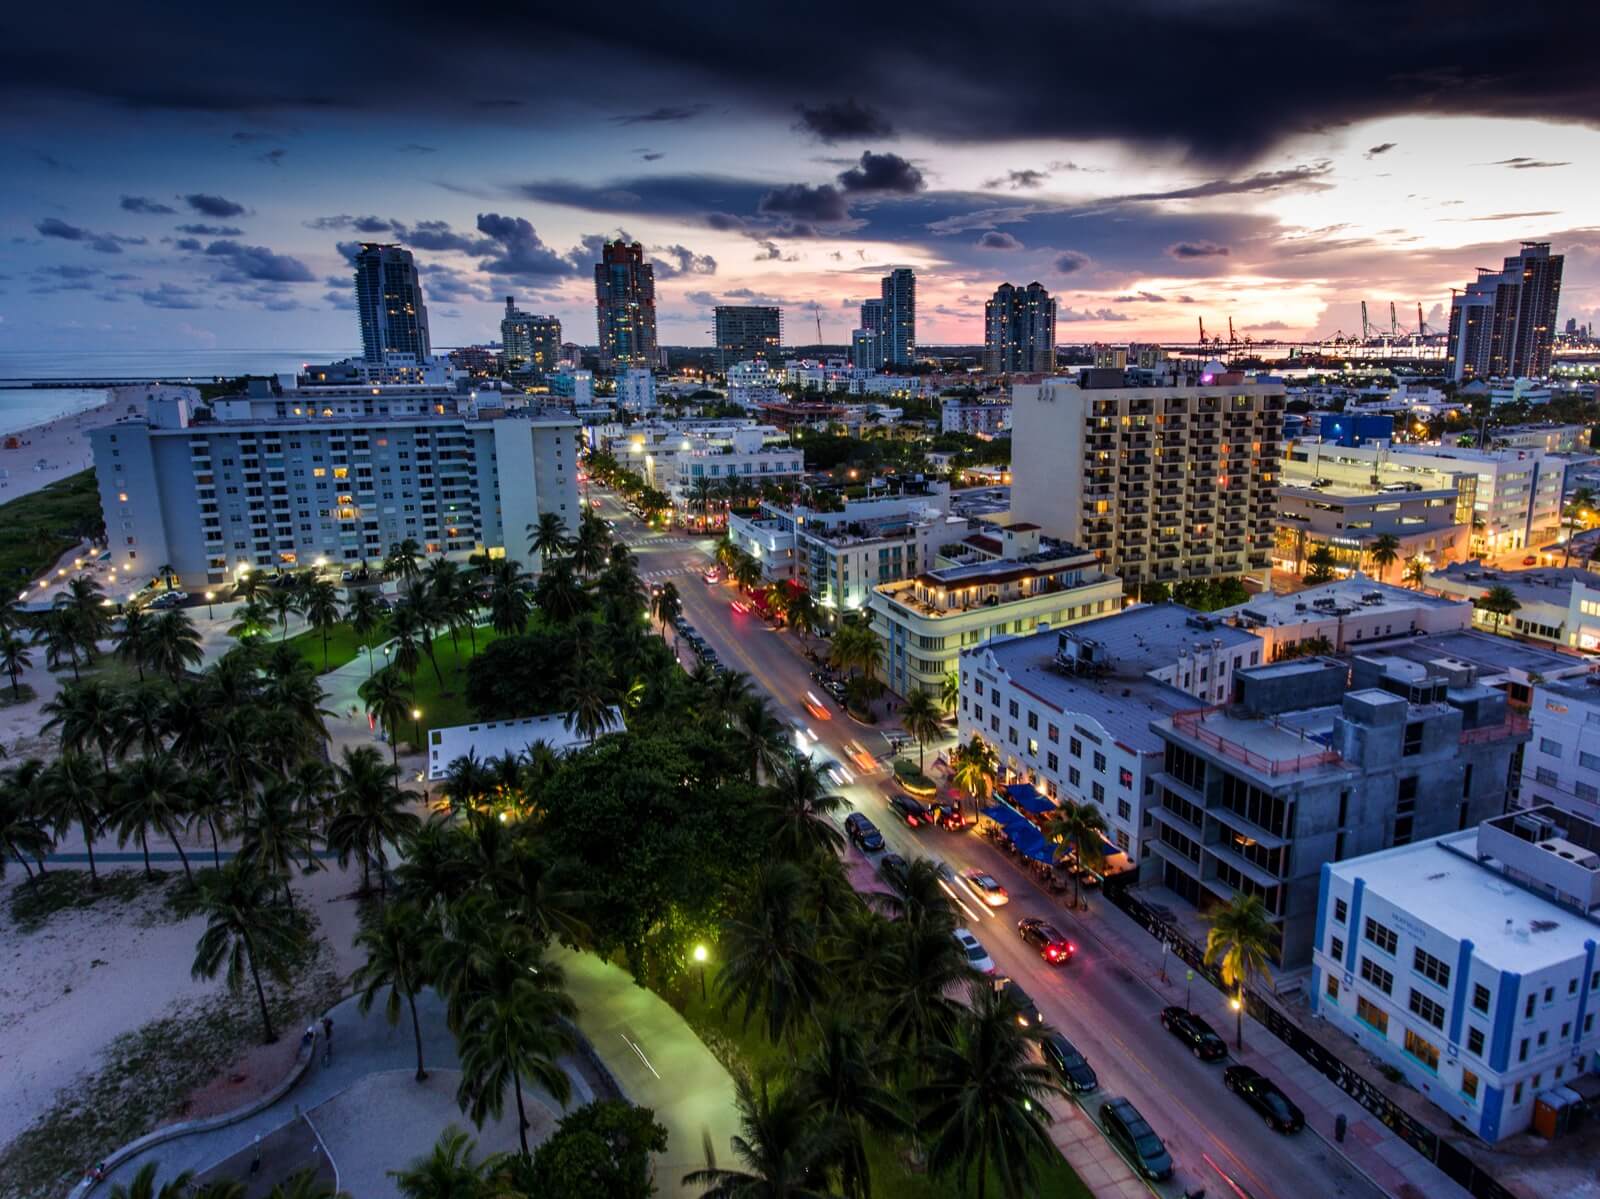 Vista aérea de calles y parques iluminados en Miami